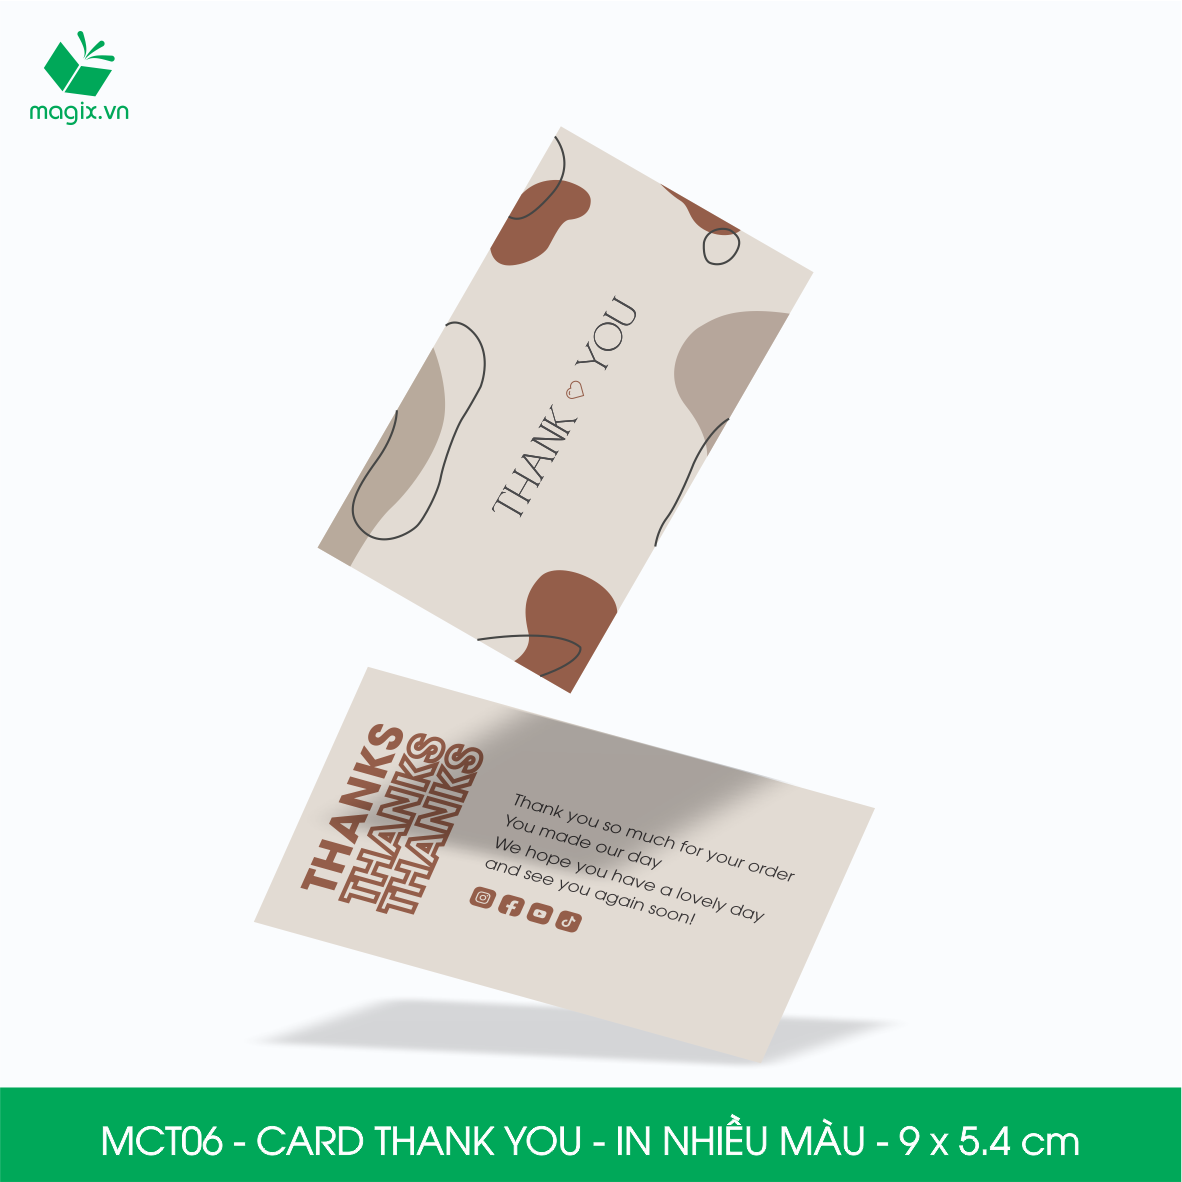 MCT06 - 9x5.4 cm - 1000 Card Thank you, Thiệp cảm ơn khách hàng, card cám ơn cứng cáp sang trọng